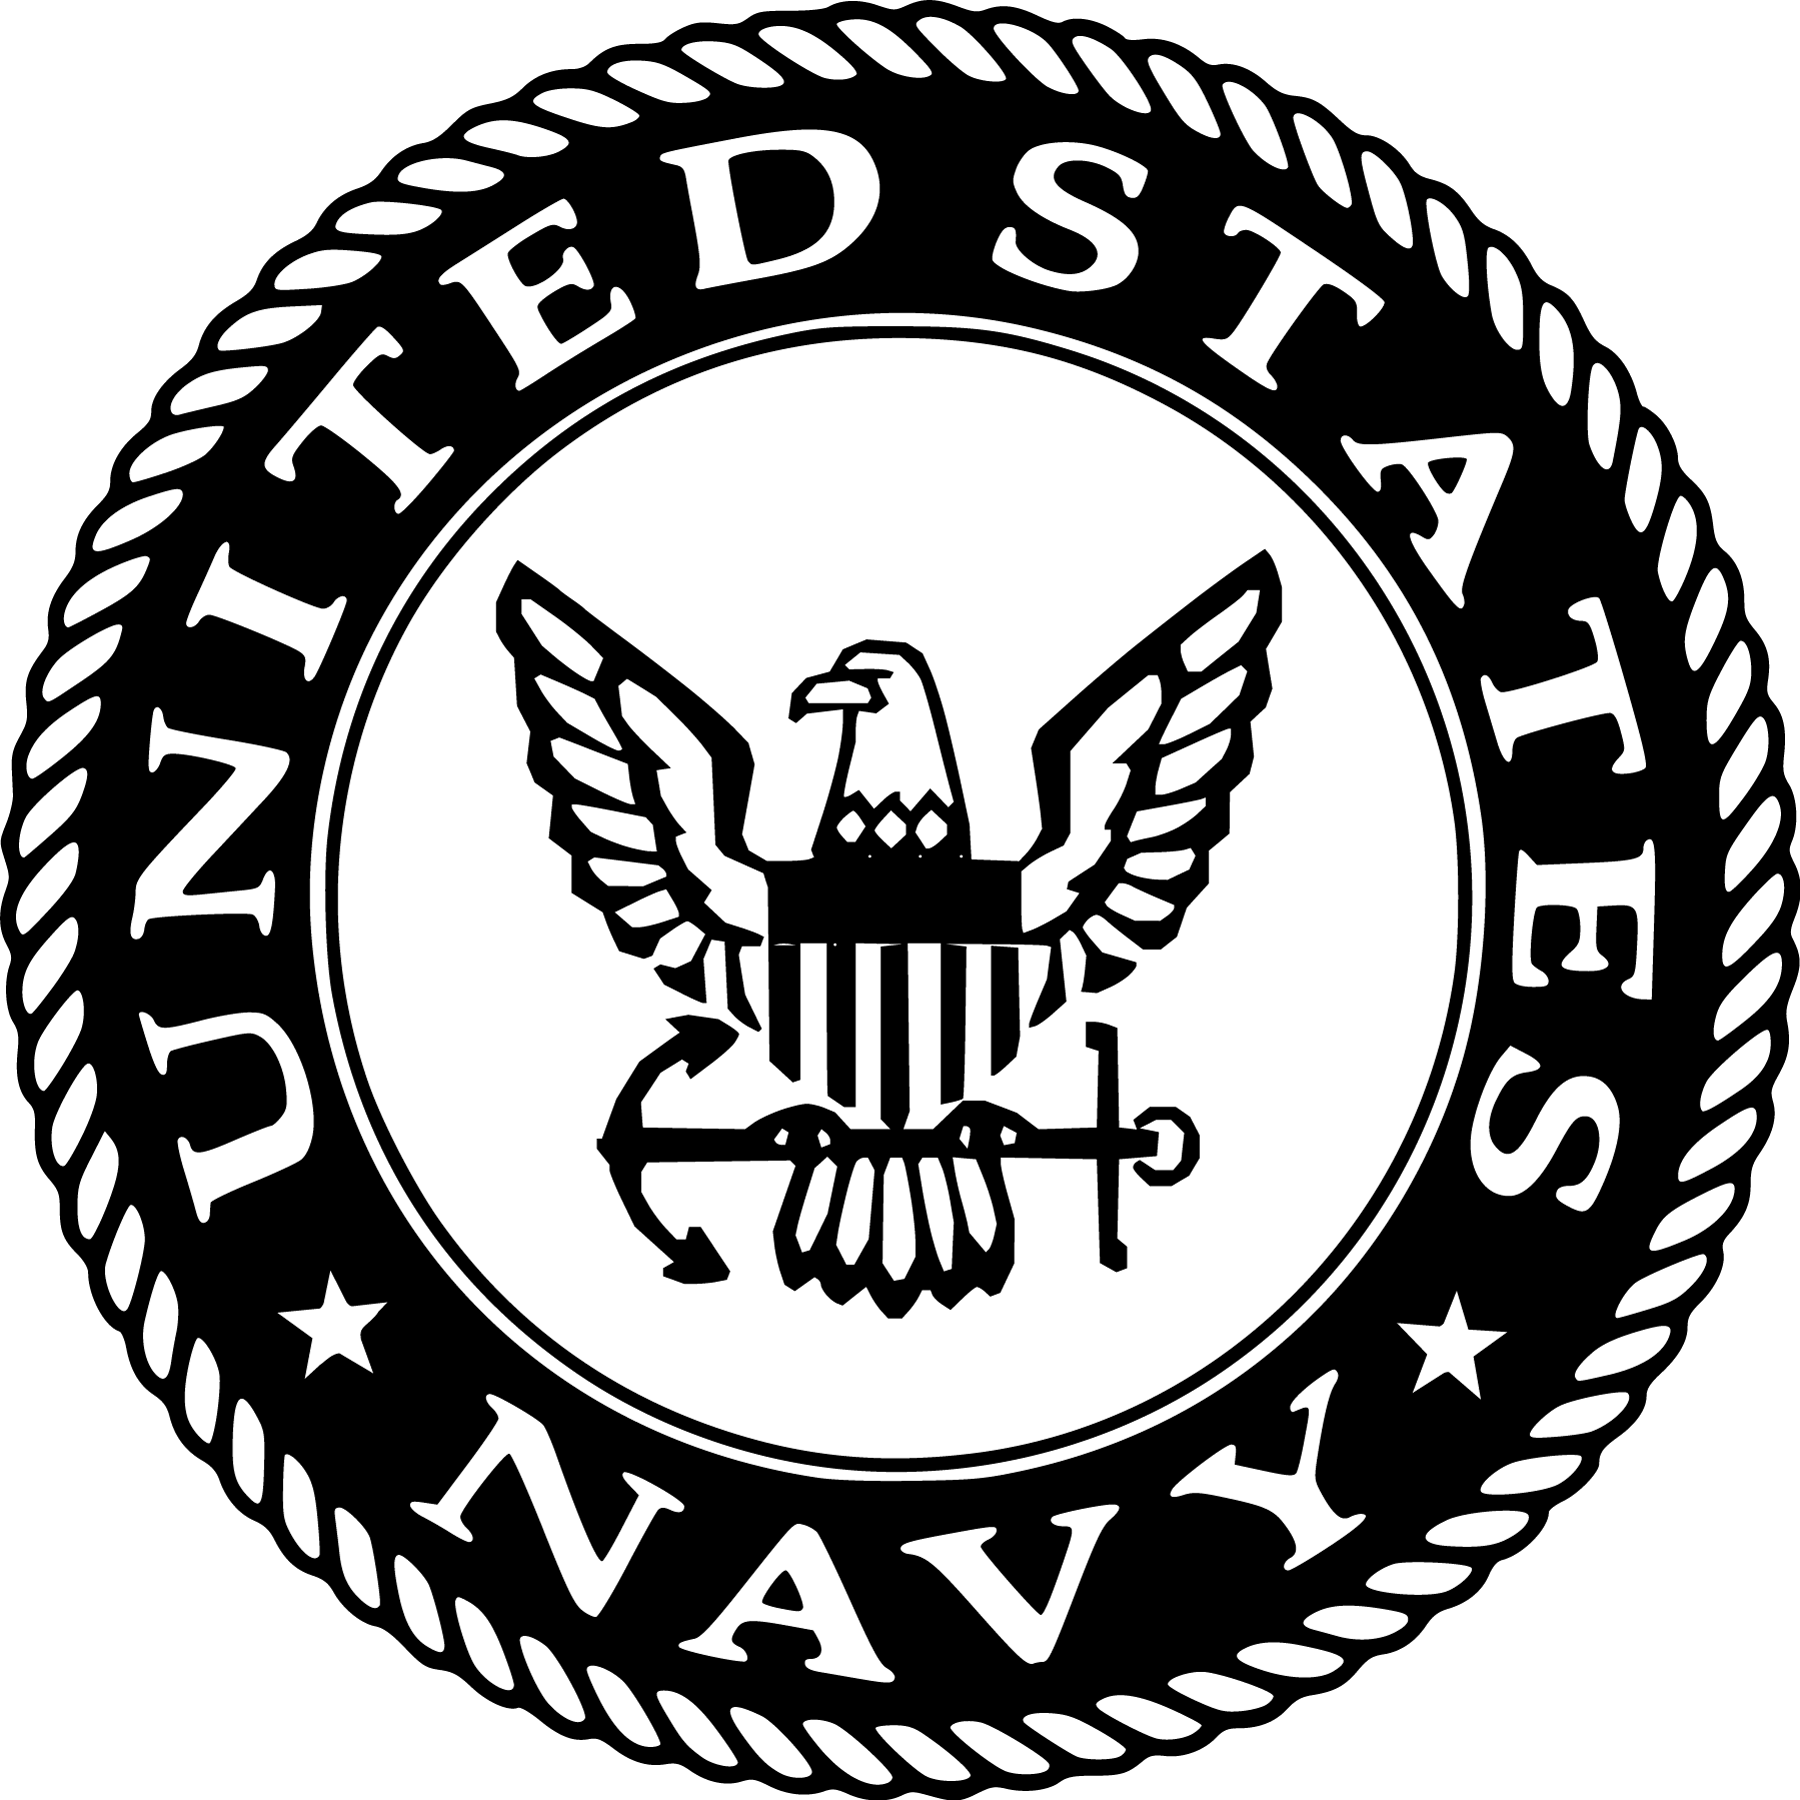 United States Logo - United States Navy Logo | Logos | Navy, Military, Us navy